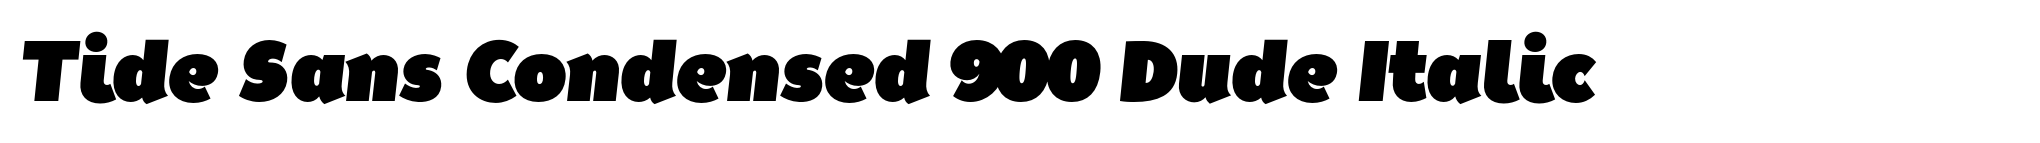 Tide Sans Condensed 900 Dude Italic image